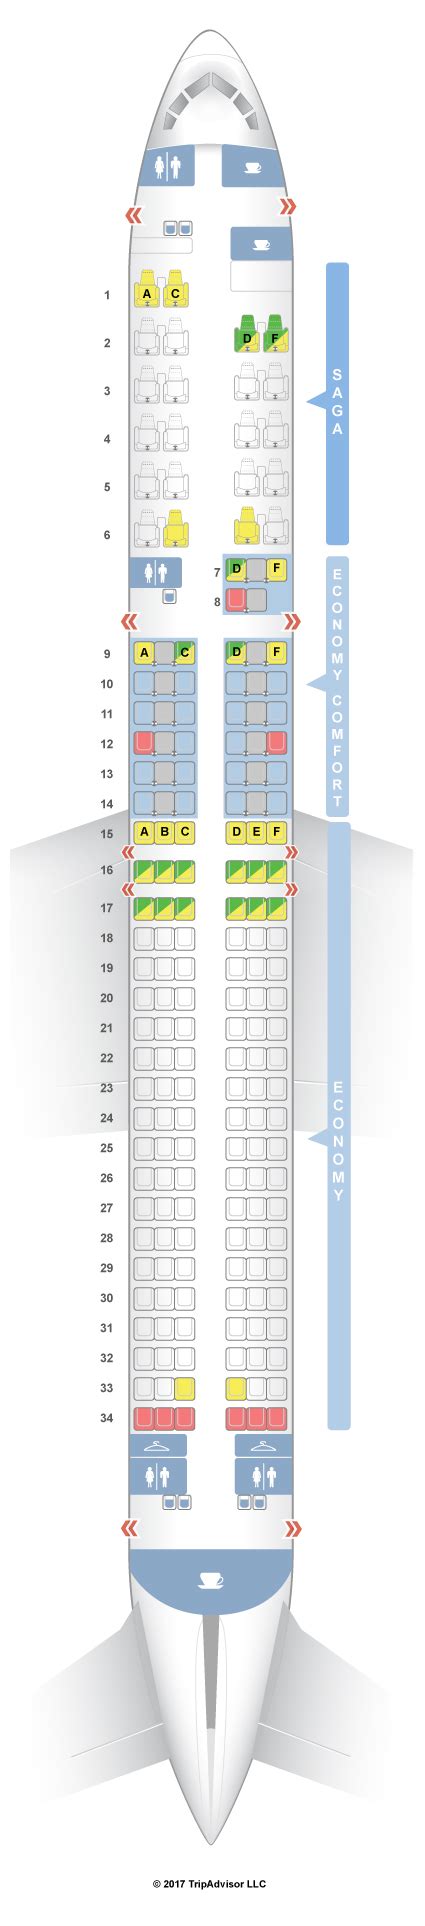 boeing 757-200 seat map icelandair